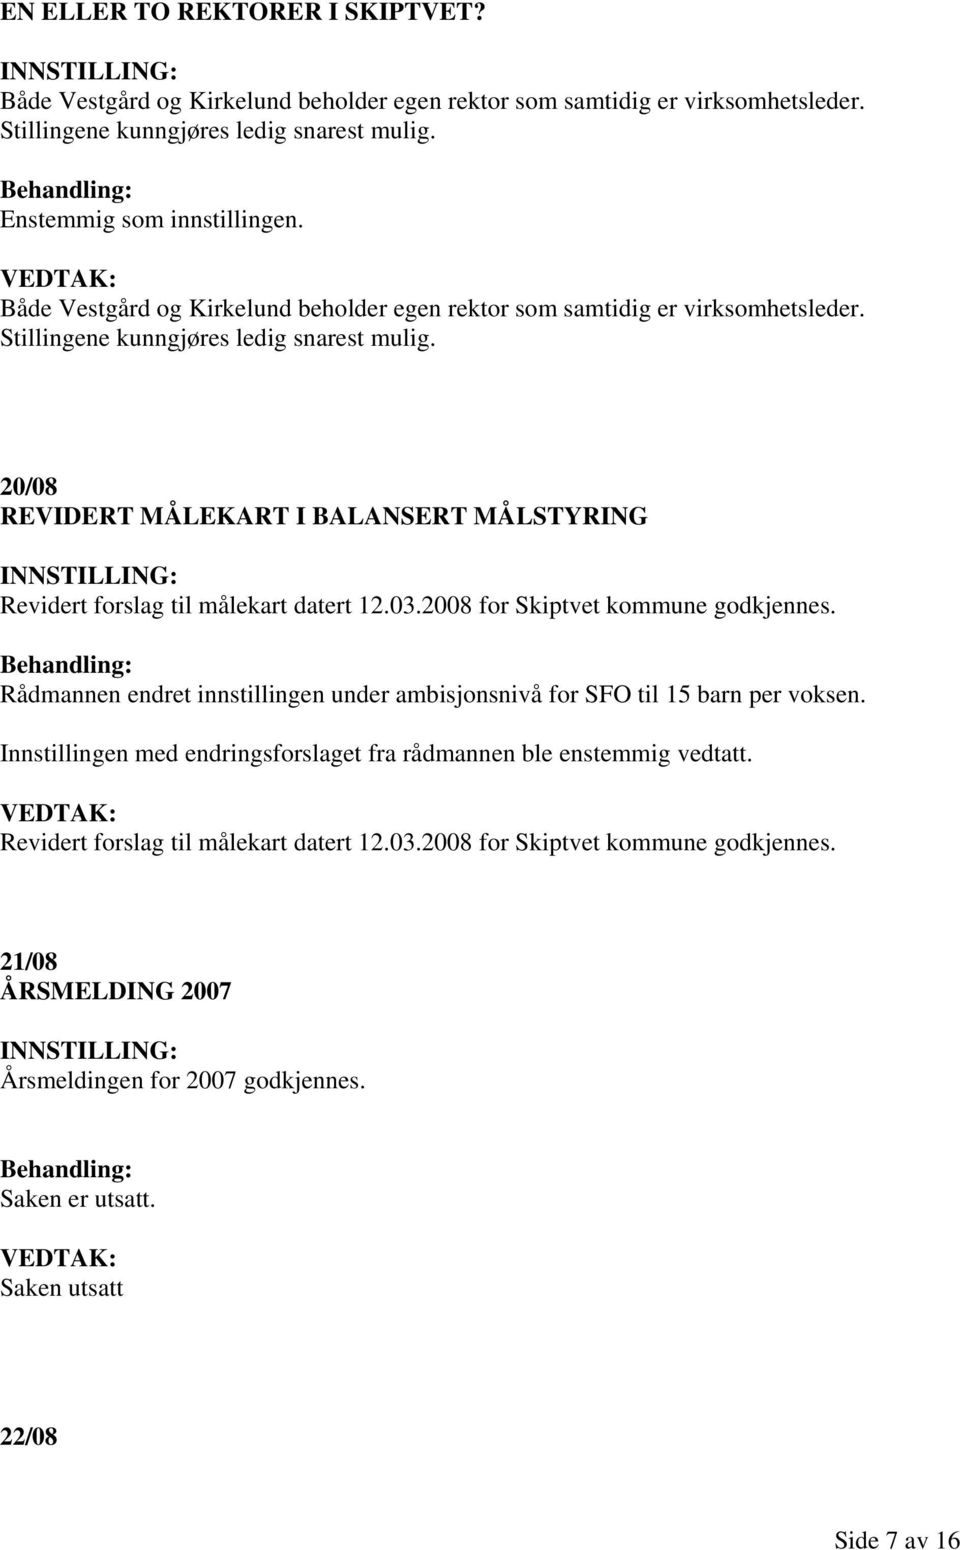 20/08 REVIDERT MÅLEKART I BALANSERT MÅLSTYRING Revidert forslag til målekart datert 12.03.2008 for Skiptvet kommune godkjennes.